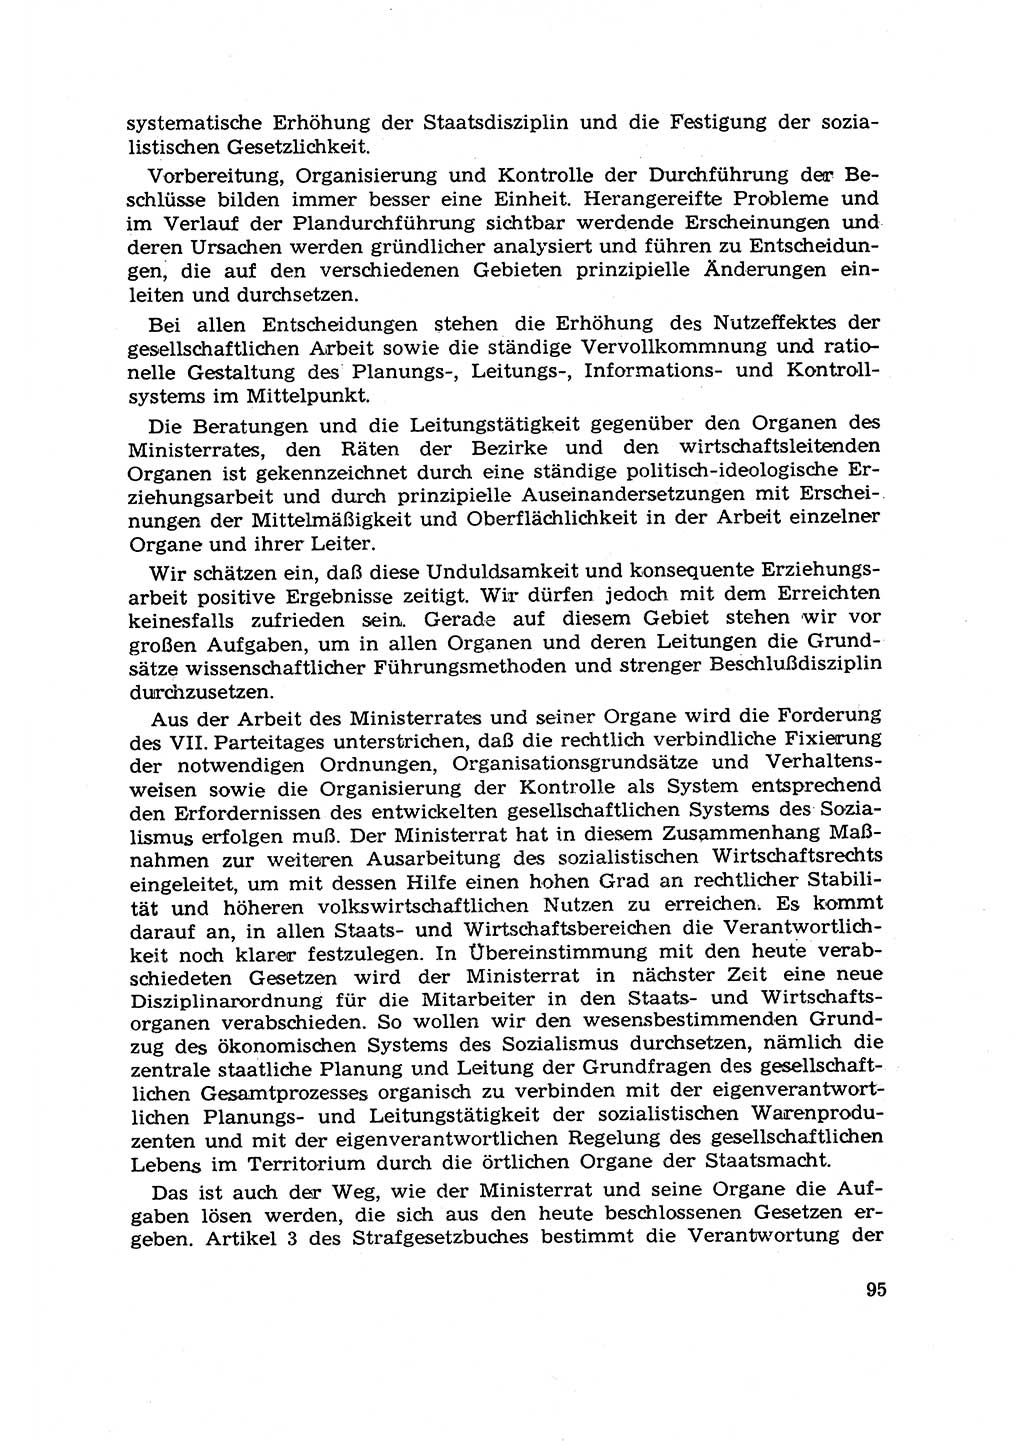 Strafrecht [Deutsche Demokratische Republik (DDR)] 1968, Seite 95 (Strafr. DDR 1968, S. 95)